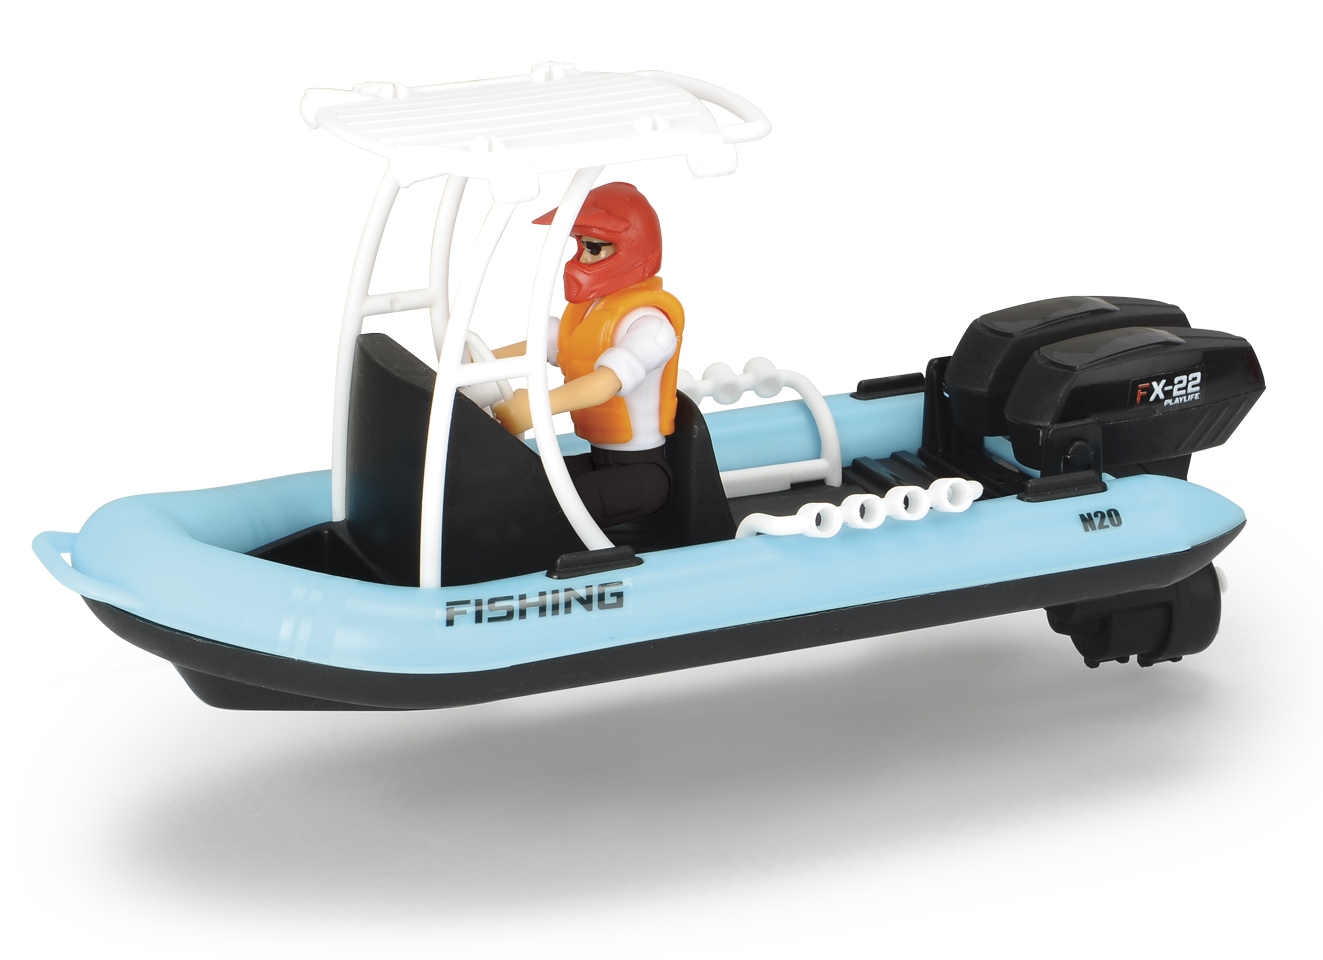 Игровой набор – Рыбацкая лодка с фигуркой и аксессуарами. PlayLife  